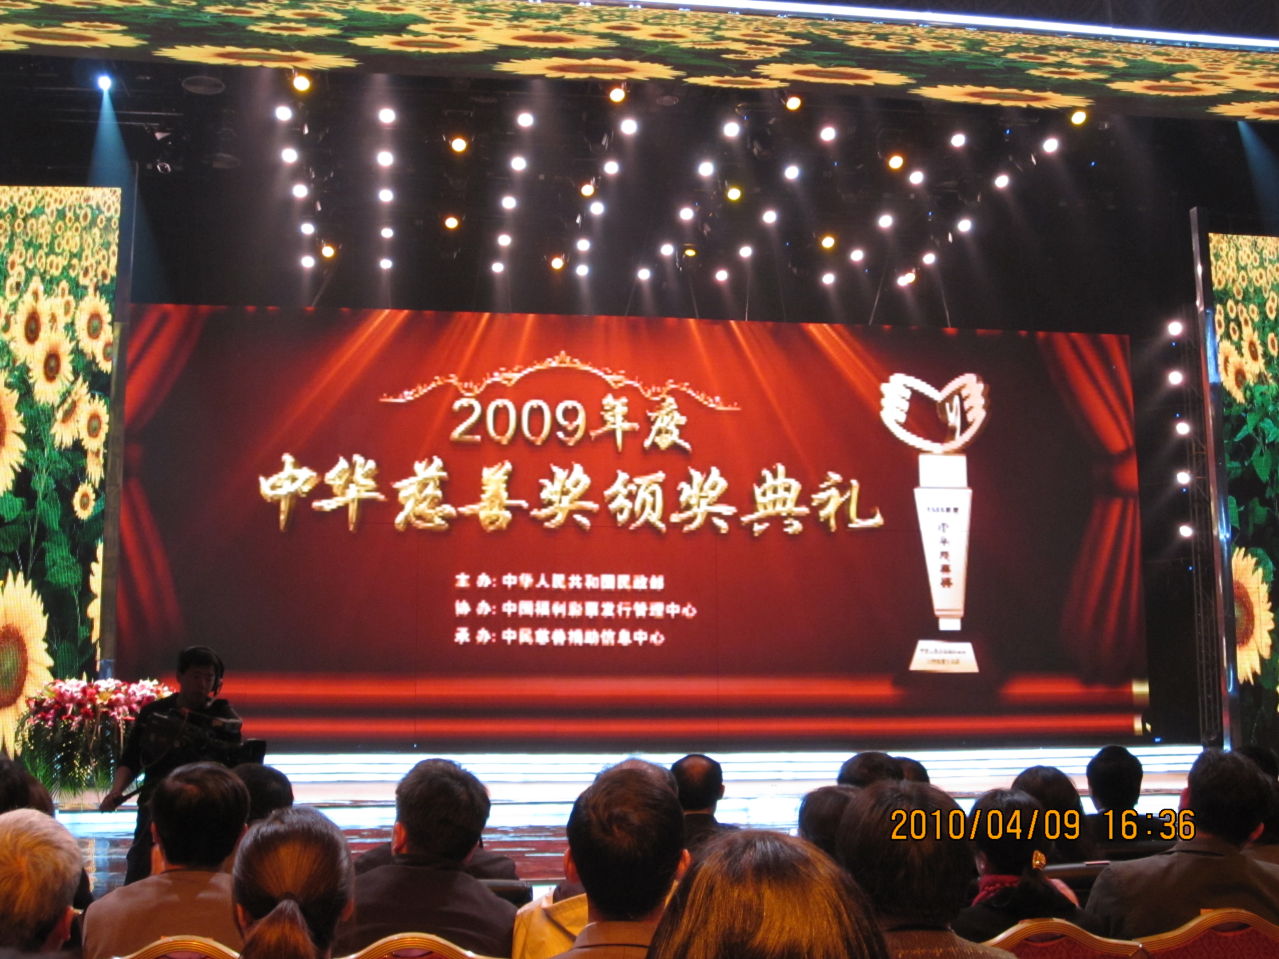 2009年 中華慈善獎 頒獎典禮